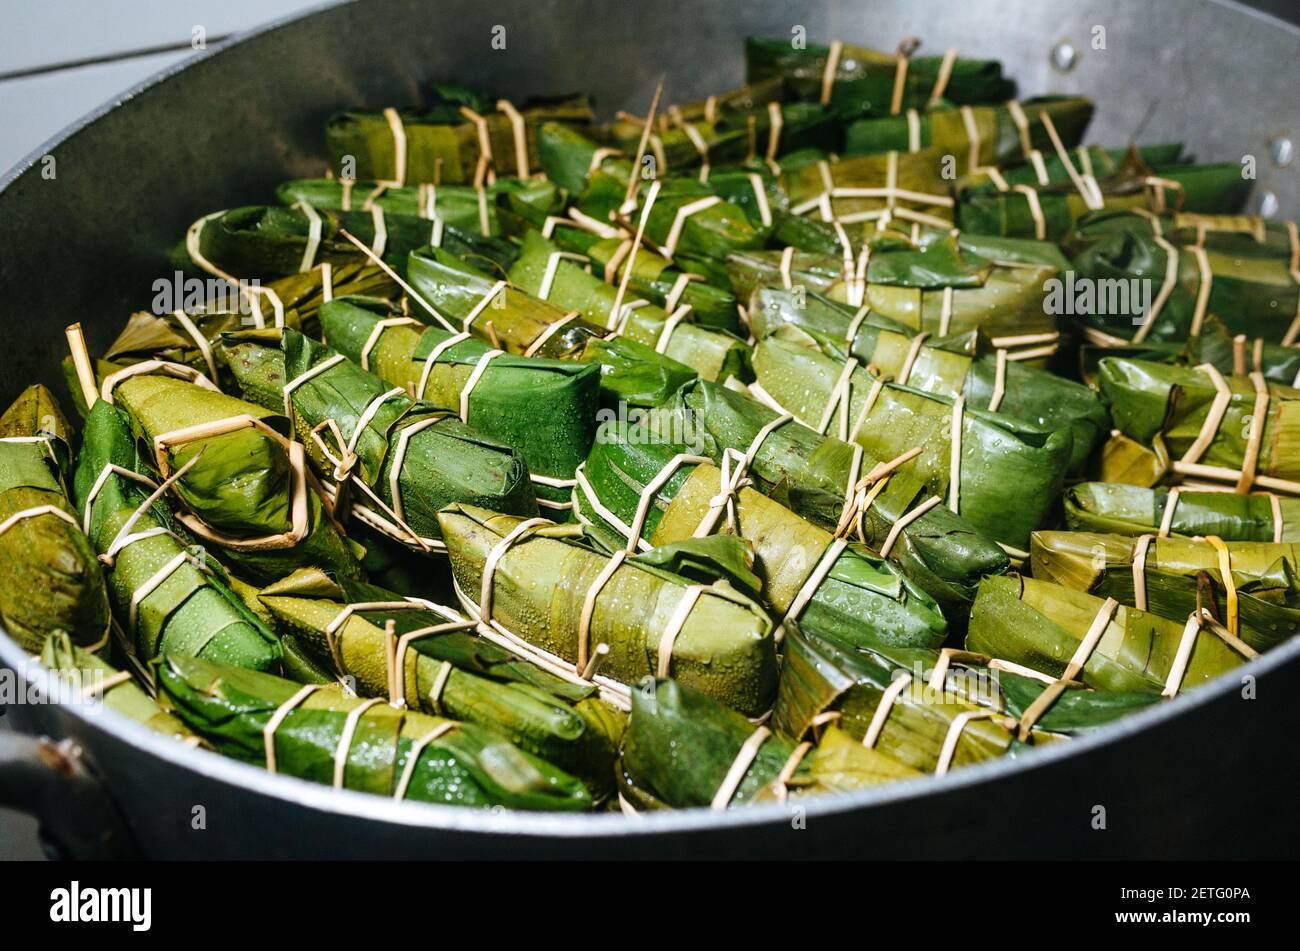 Peruanische Tamales in Bananenblätter verpackt Kochen in einem Topf. Im Inneren befindet sich ein Teig auf Maisbasis mit Fleisch, die traditionell zum Frühstück am Sonntag gegessen werden Stockfoto